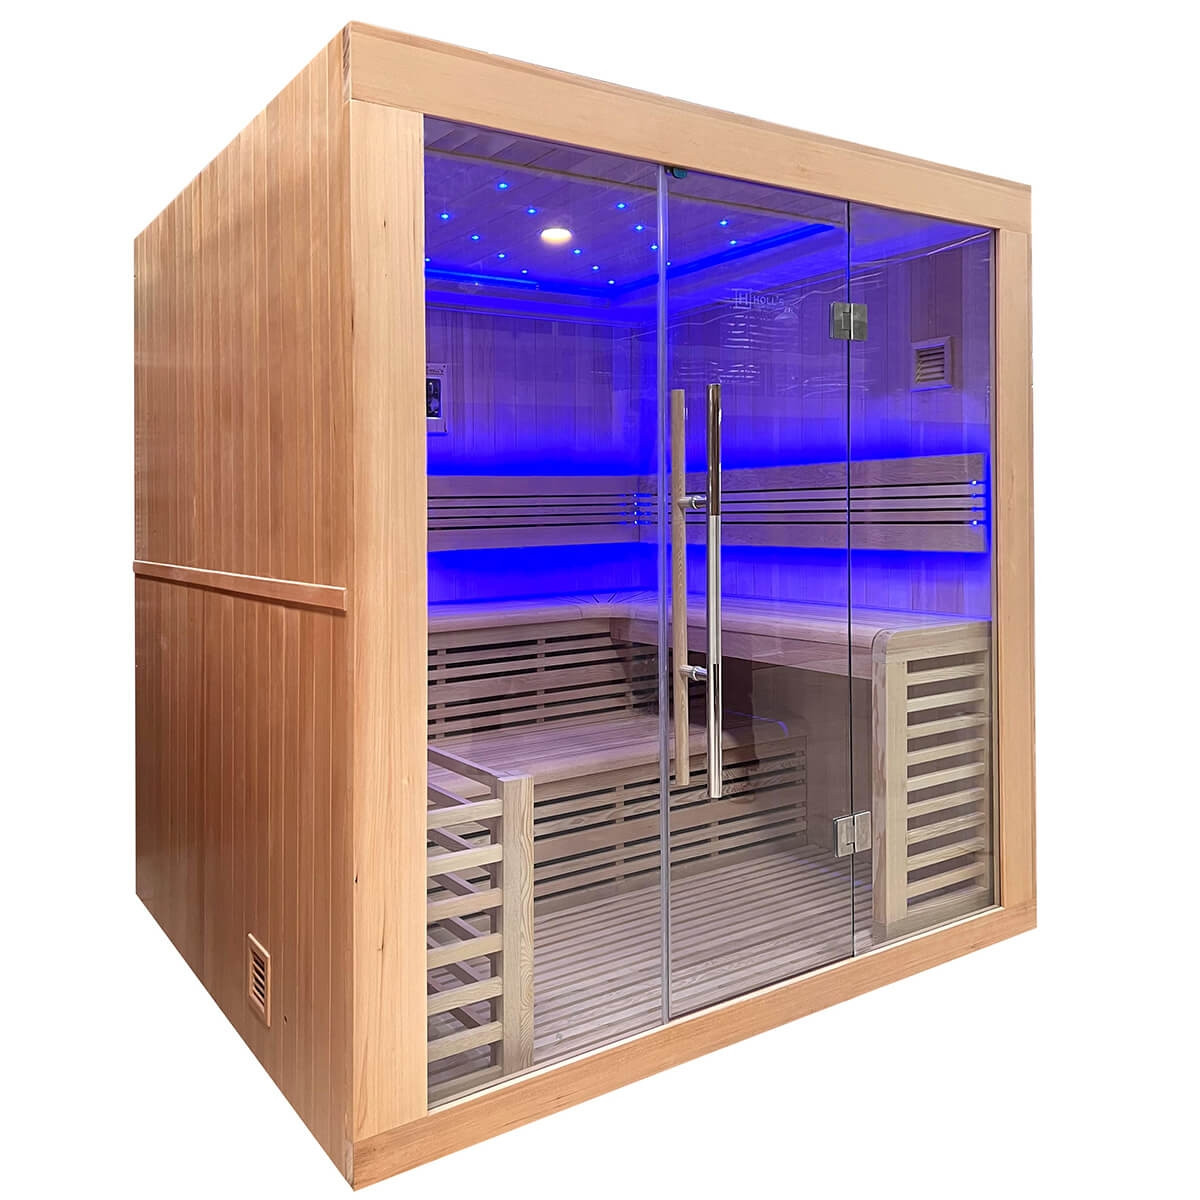 Sauna Finlandese per 6 Persone Utopia con Cromoterapia e Radio mp3, HL-UTA6PK, 67.450 €